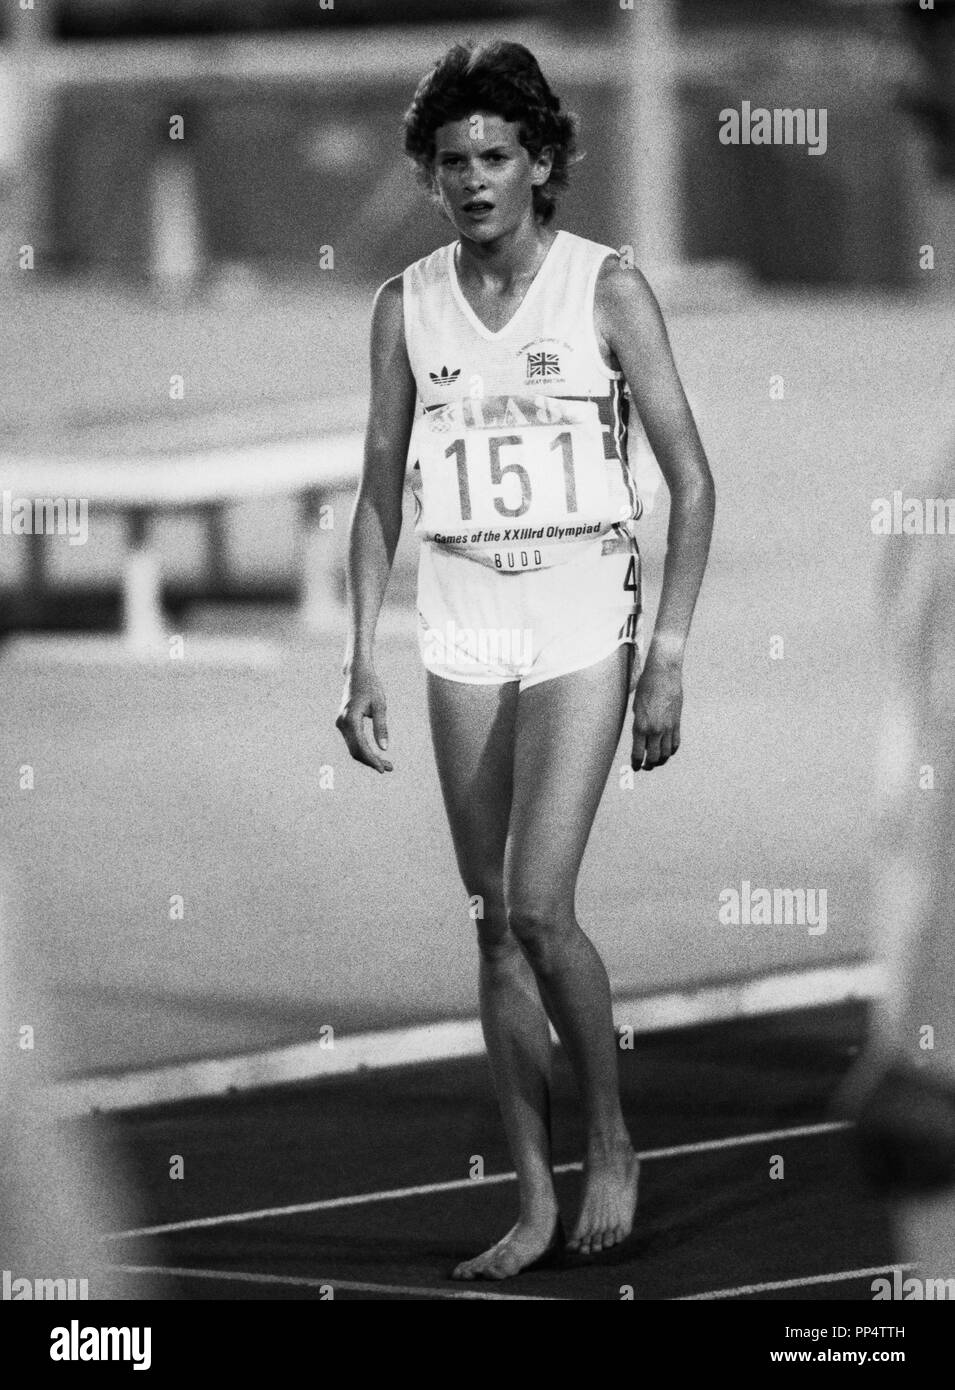 ZOLA BUDD Leichtathlet in Südafrika geboren konkurrieren für Großbritannien in Olympischen Sommer Spiele 1984 in Los Angeles in den 3000m laufen barfuß Stockfoto